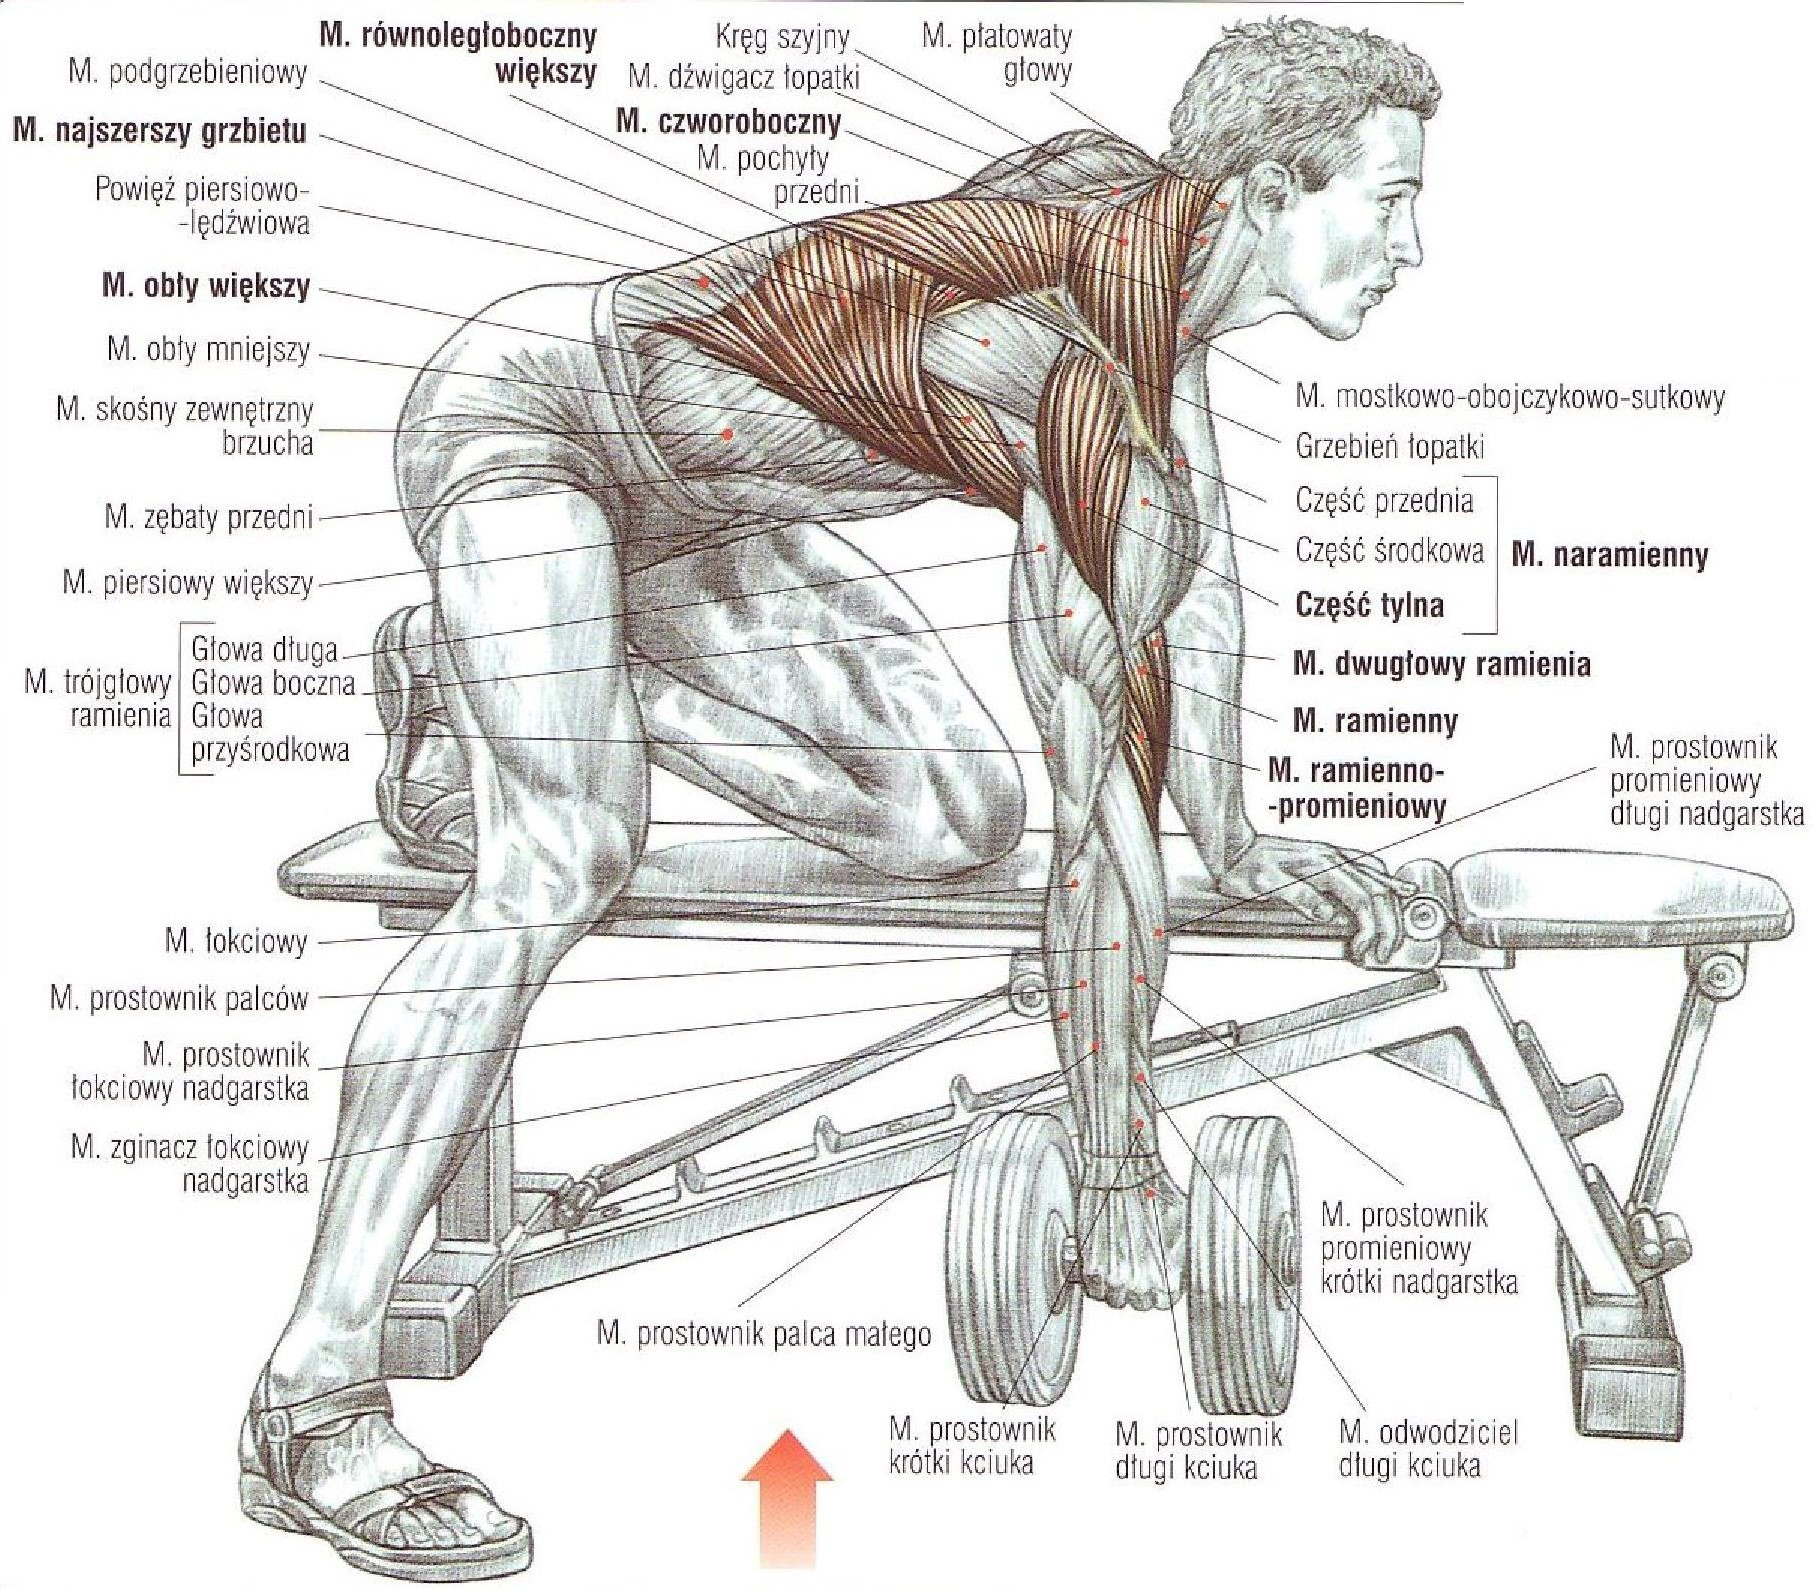 Развитие группы мышц. Упражнения на развитие широчайшей мышцы спины. Упражнения со штангой для широчайших мышц. Как прокачать широчайшие мышцы спины. Прокачка широчайших мышц спины штангой.